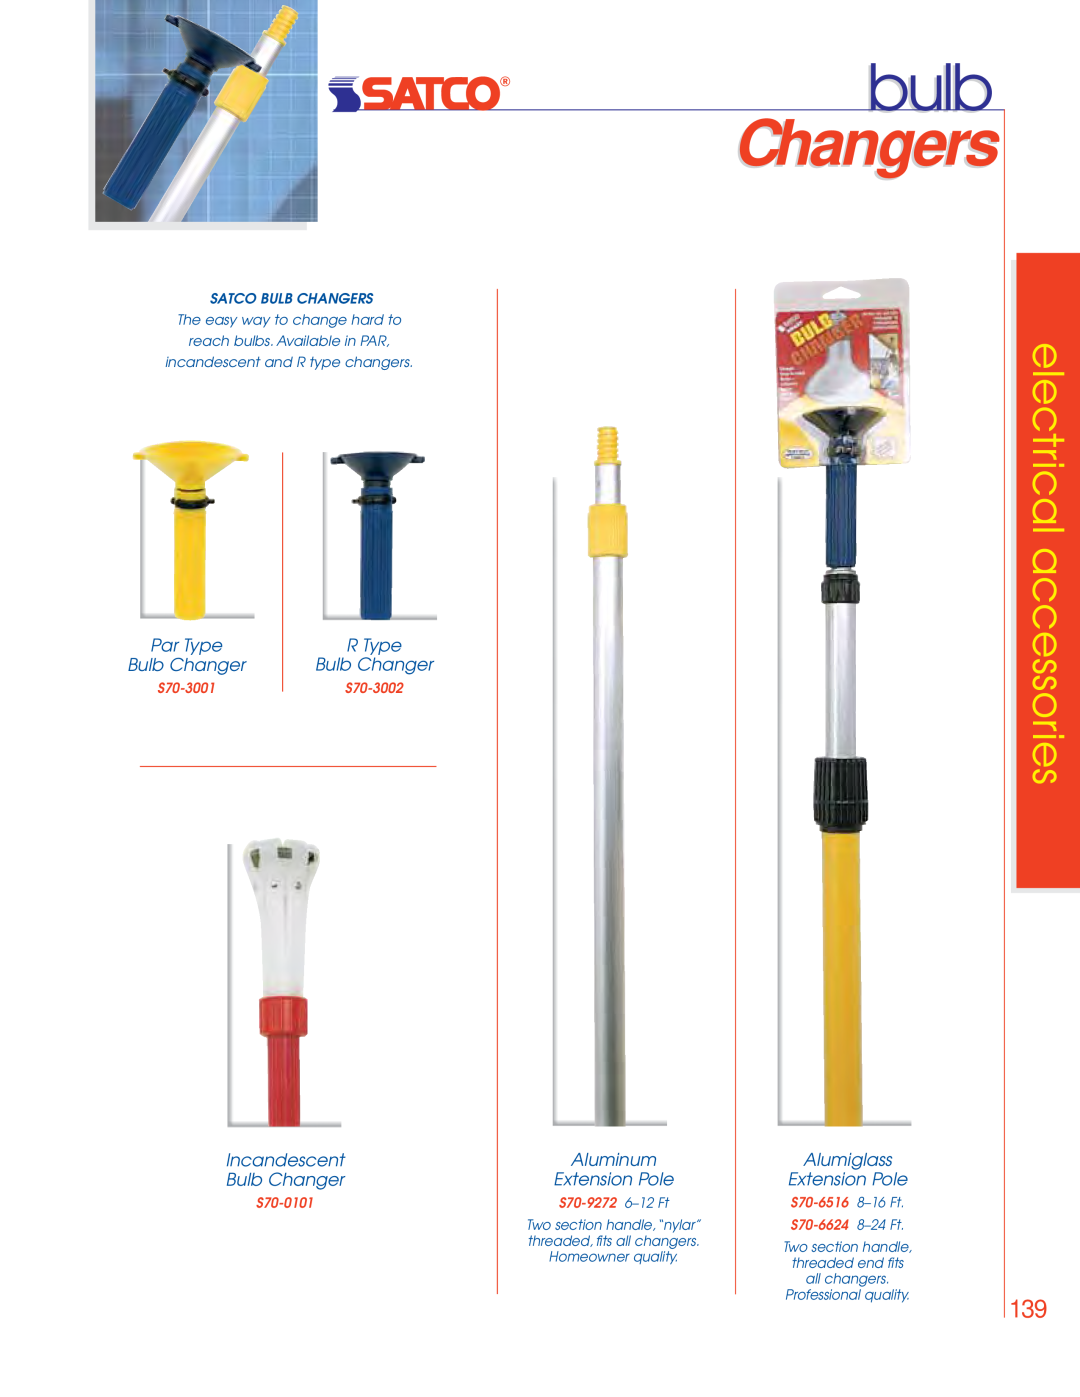 Satco Products 76-529, 75-046 bulb, Par Type, R Type, Incandescent Bulb Changer, Aluminum Extension Pole, Changers 